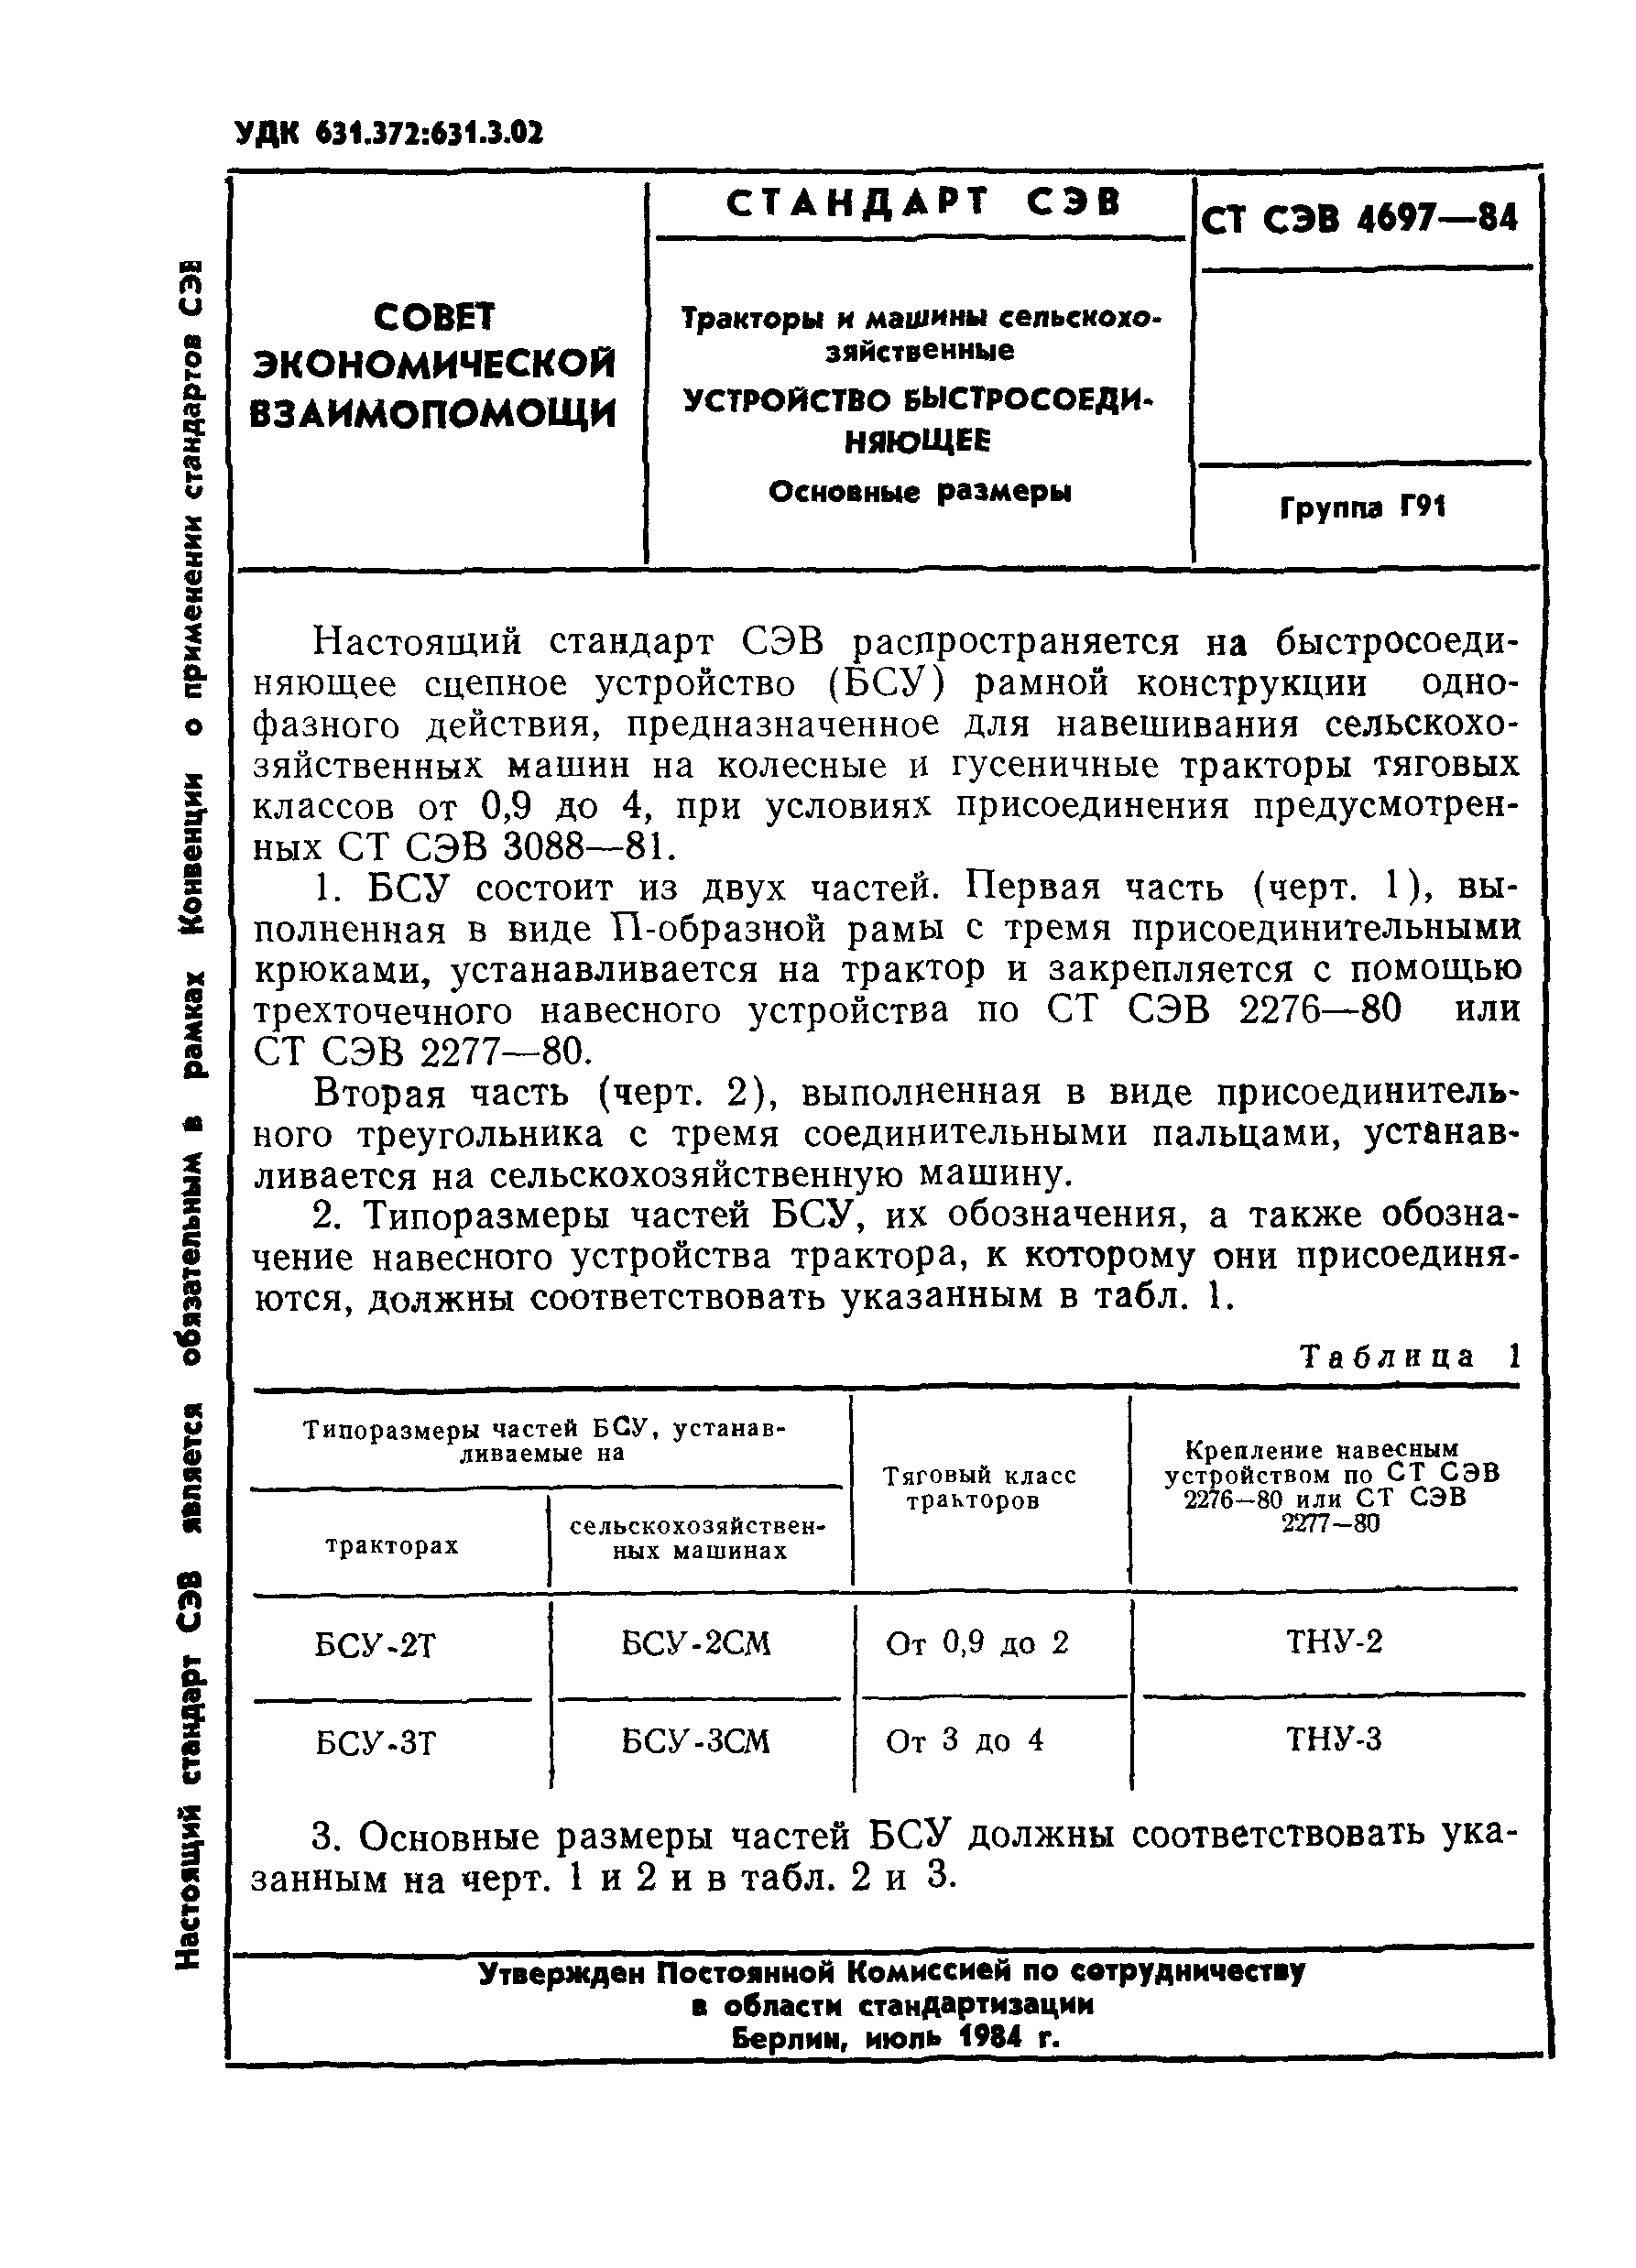 СТ СЭВ 4697-84